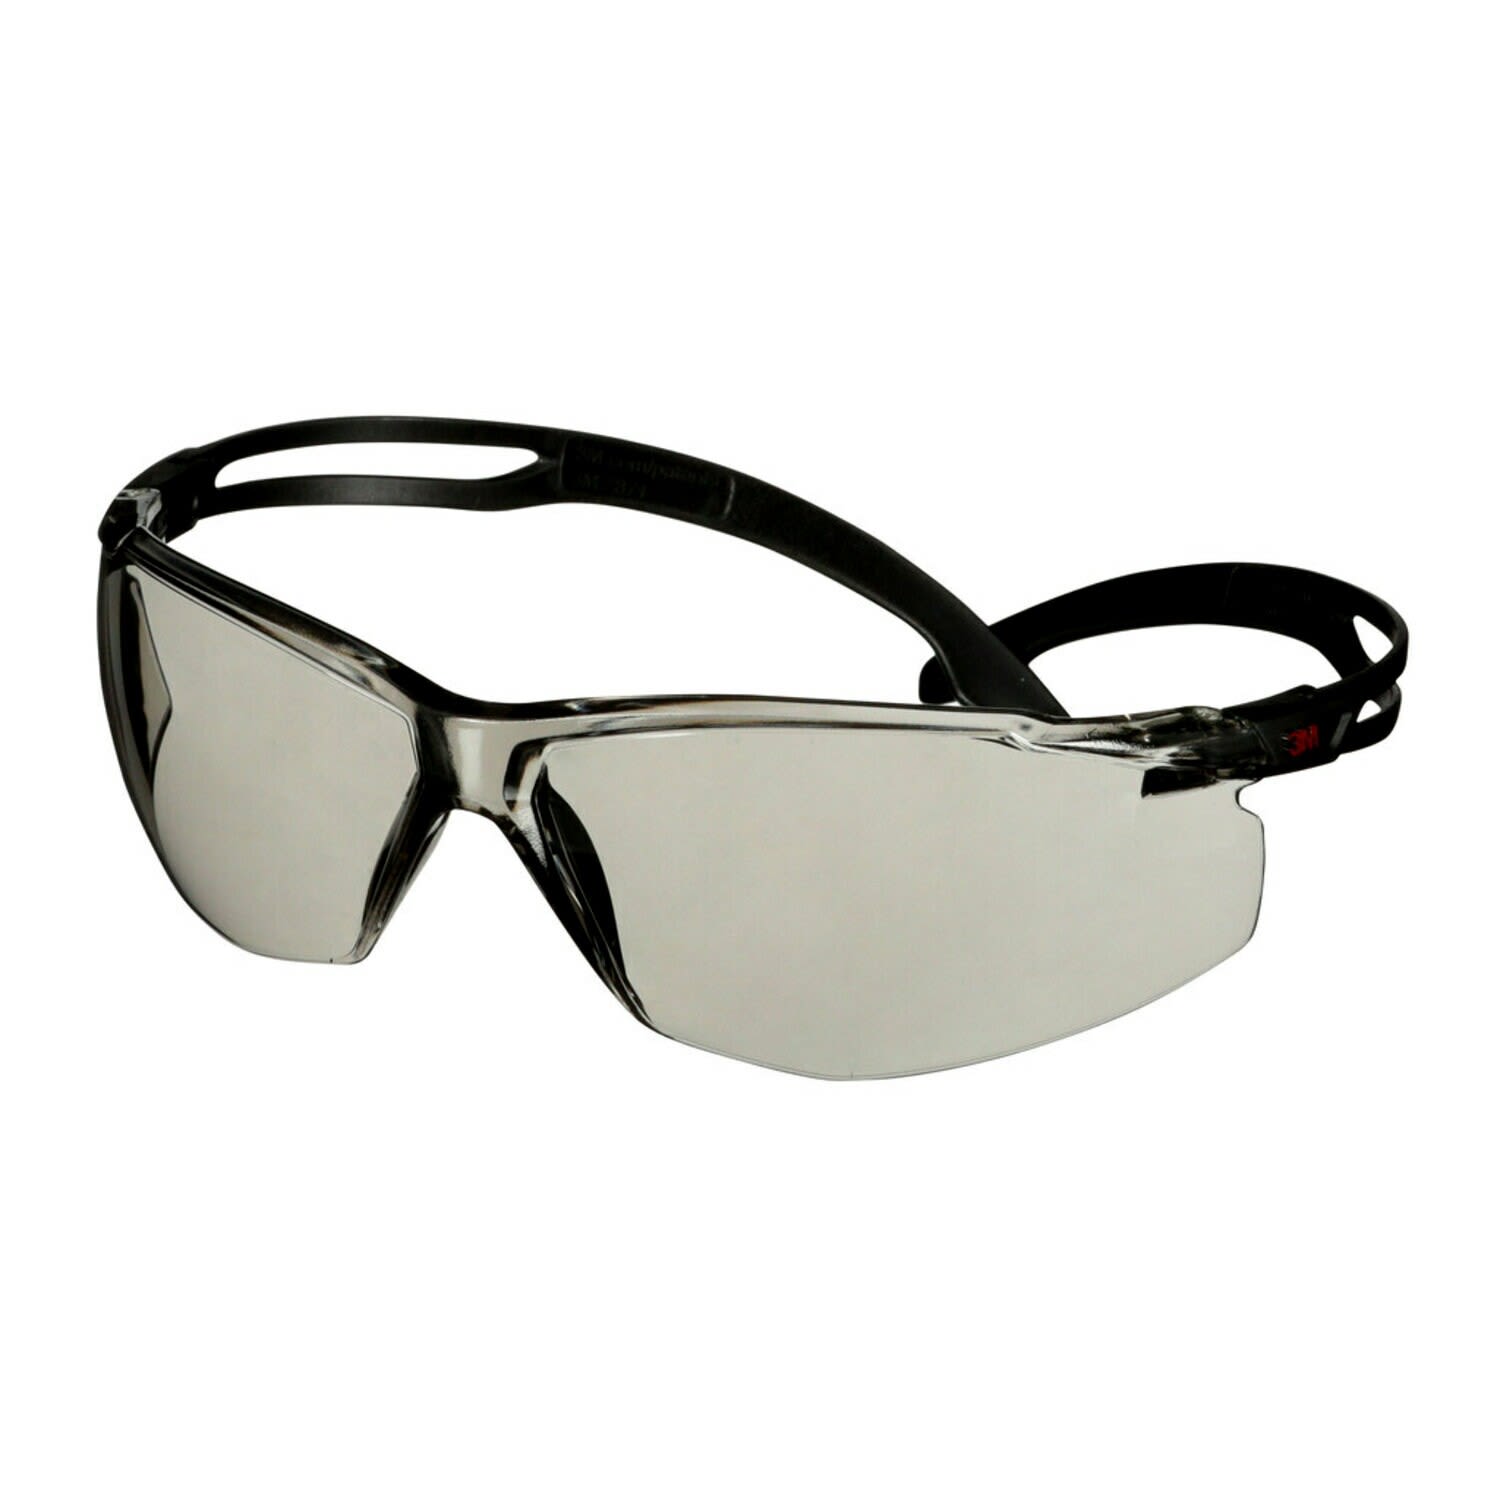 3M Safety Glasses, Grey